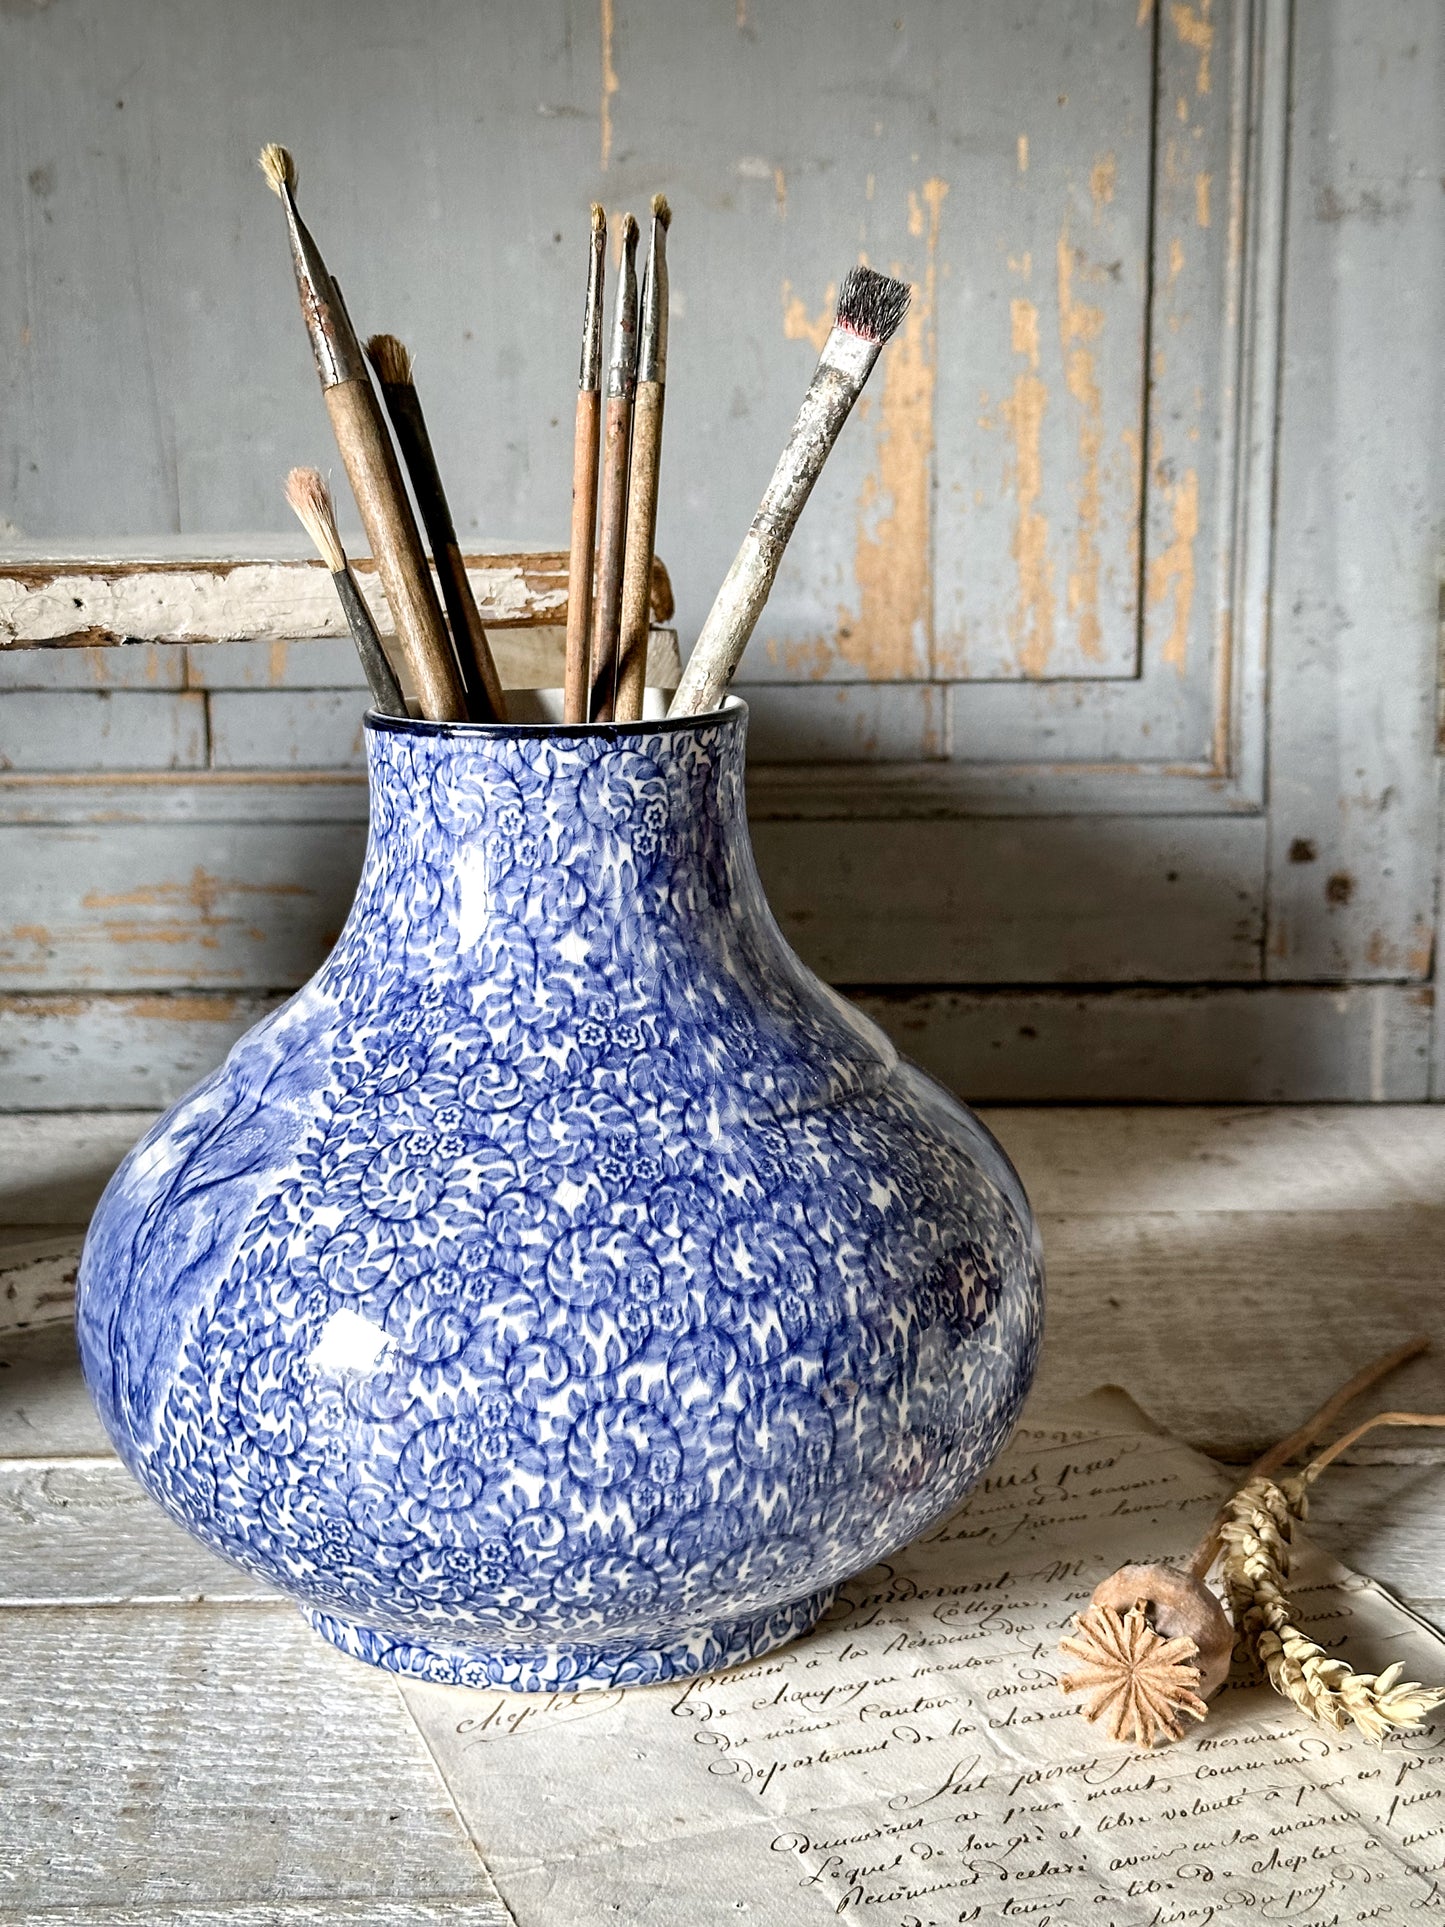 A stunning vintage blue and white Fenton ‘Ye Olde’ Foley Ware vase